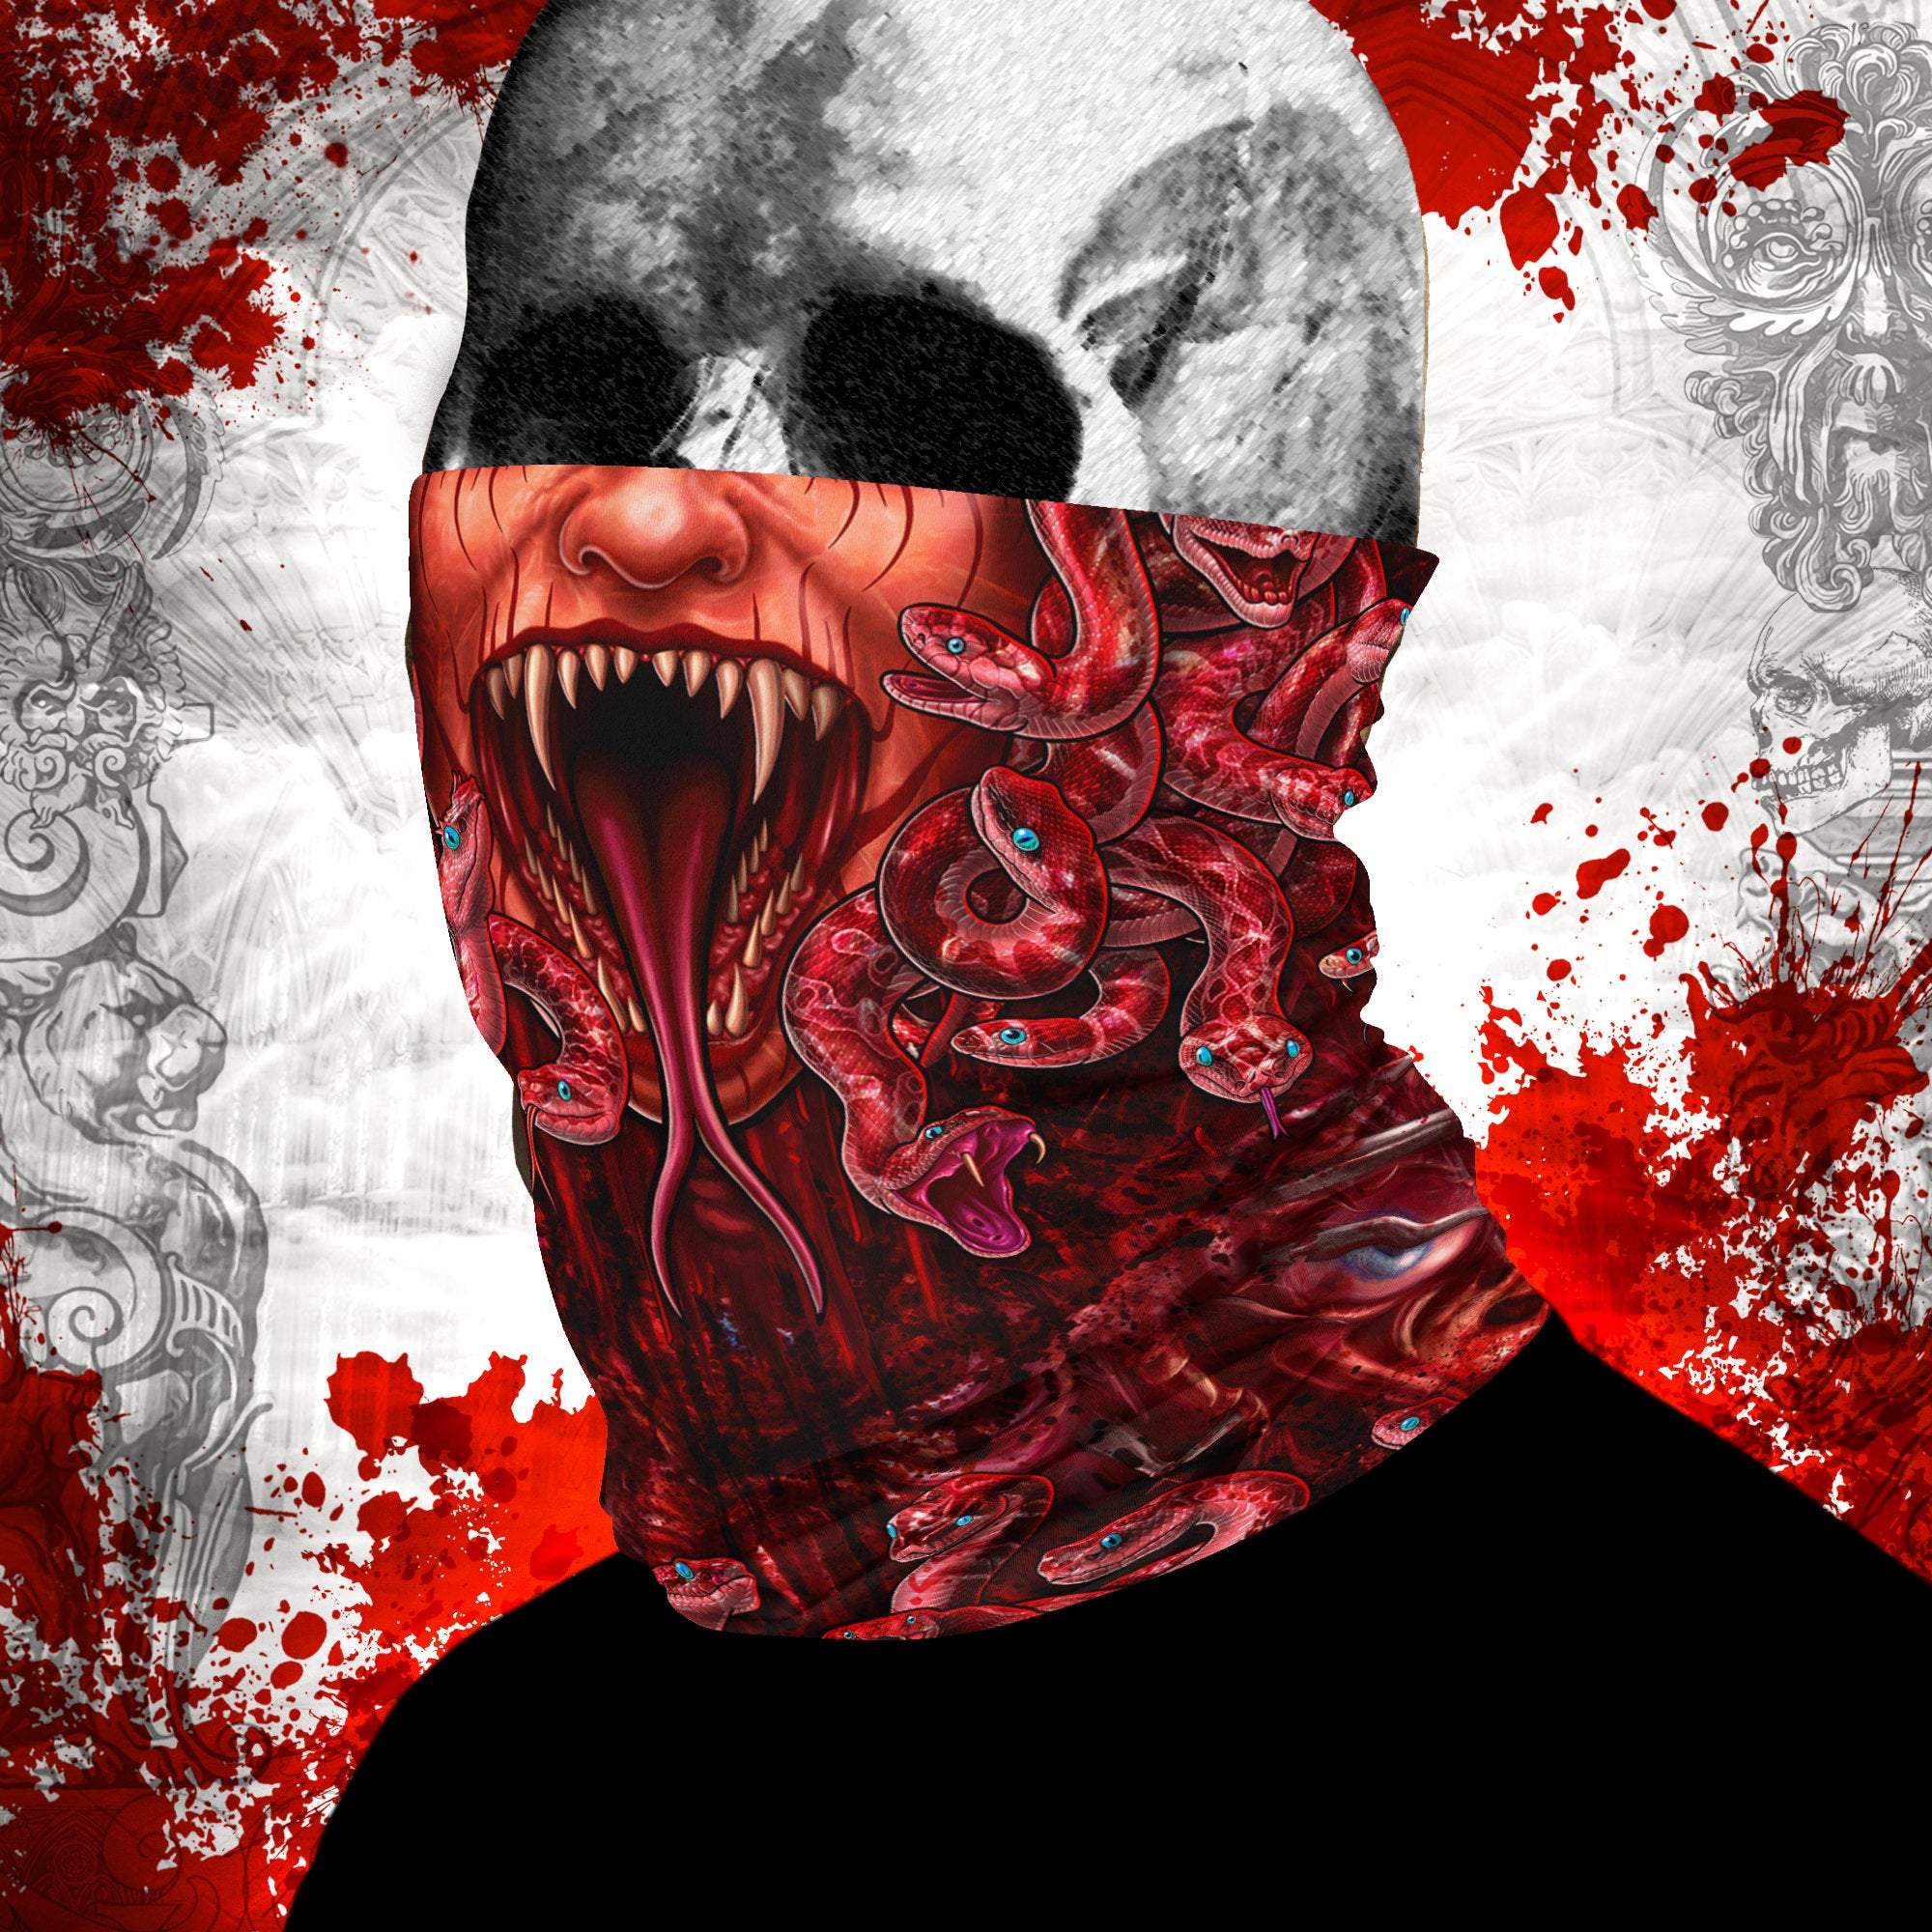 Horror Neck Gaiter, Face Mask, Head Covering, Snakes Headband, Medusa, Halloween, Skull Art - Gore & Flesh, 3 Face Options - Abysm Internal